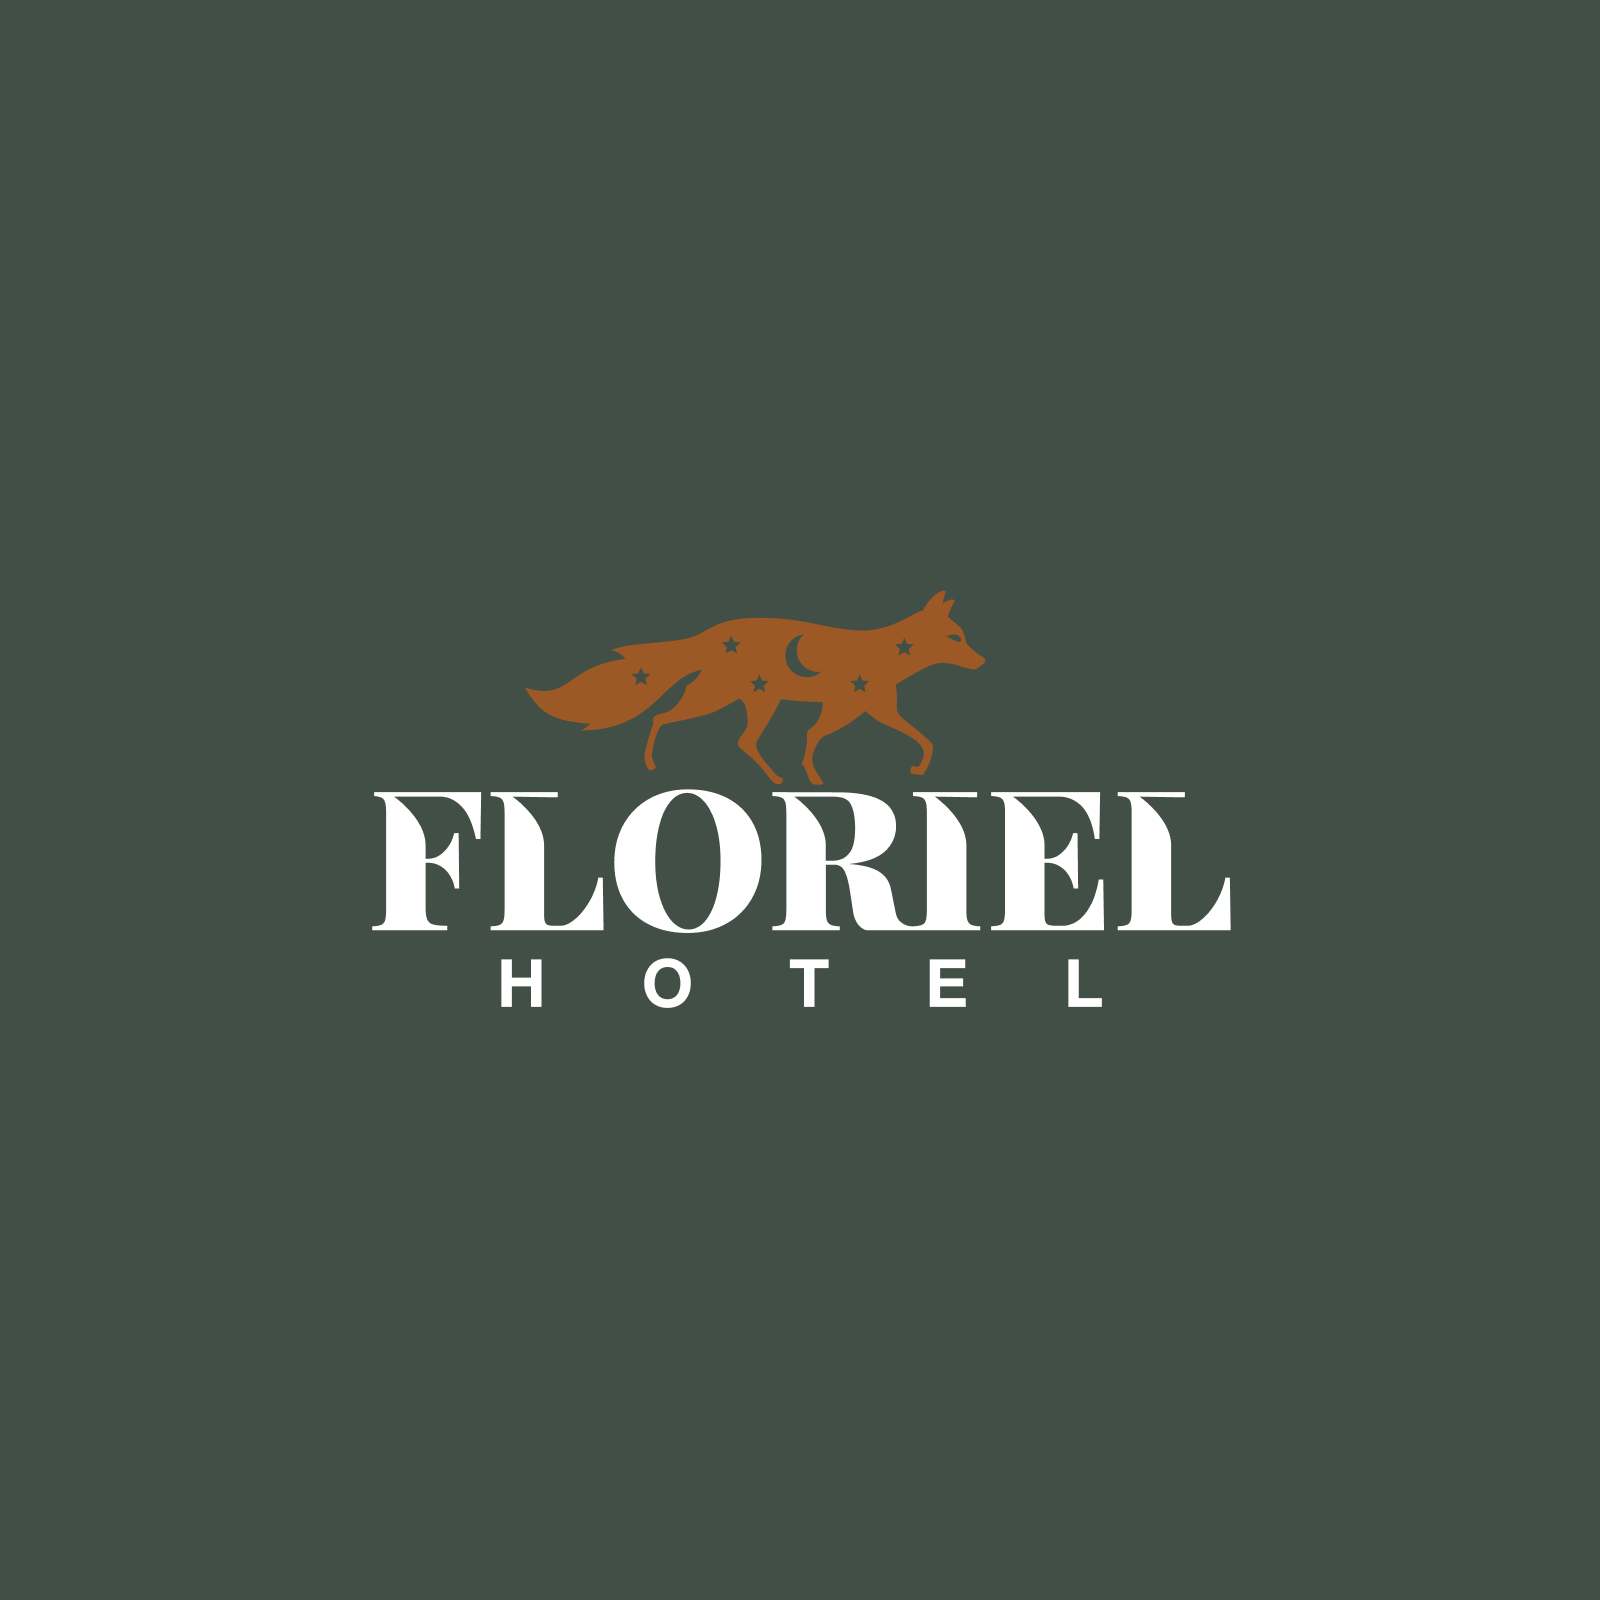 Hôtel Floriel: a connected hotel experience